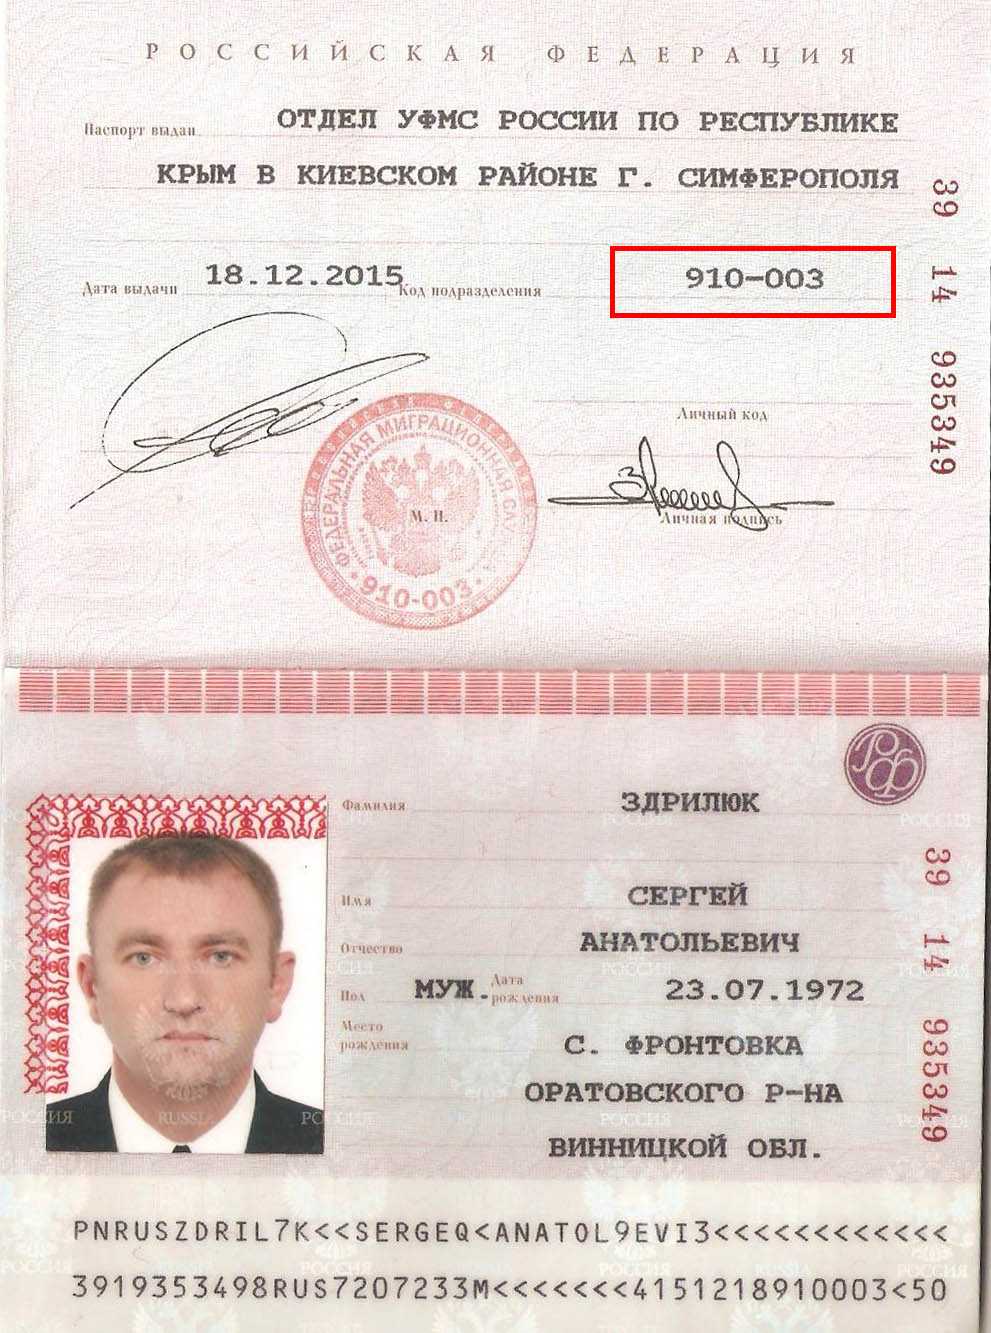 Где найти серию и номер паспорта казахстан | кредитный адвокат